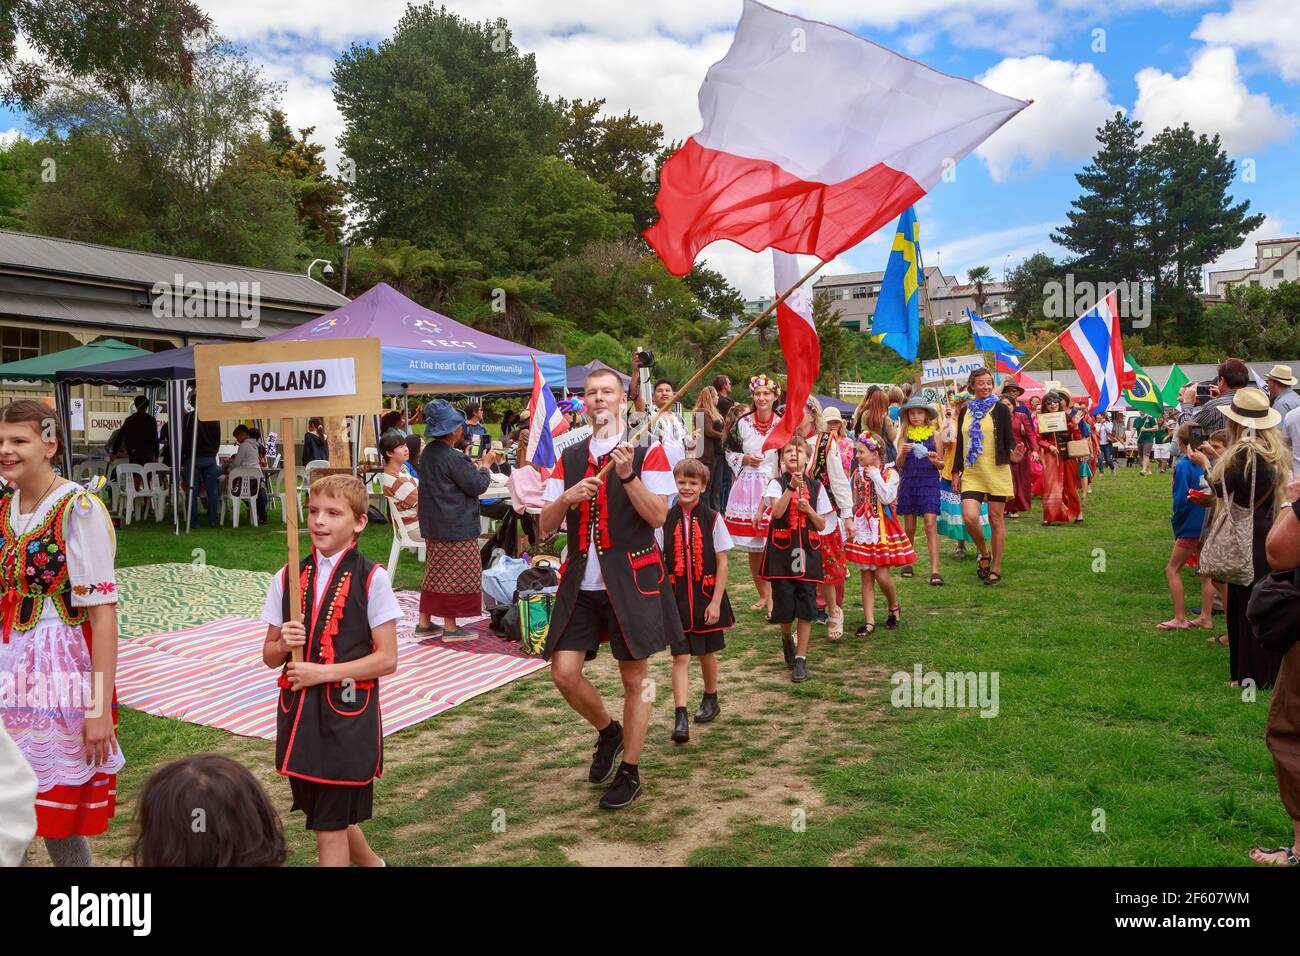 Les Polonais en costume national et le drapeau polonais, défilant dans un festival multiculturel. Tauranga, Nouvelle-Zélande Banque D'Images